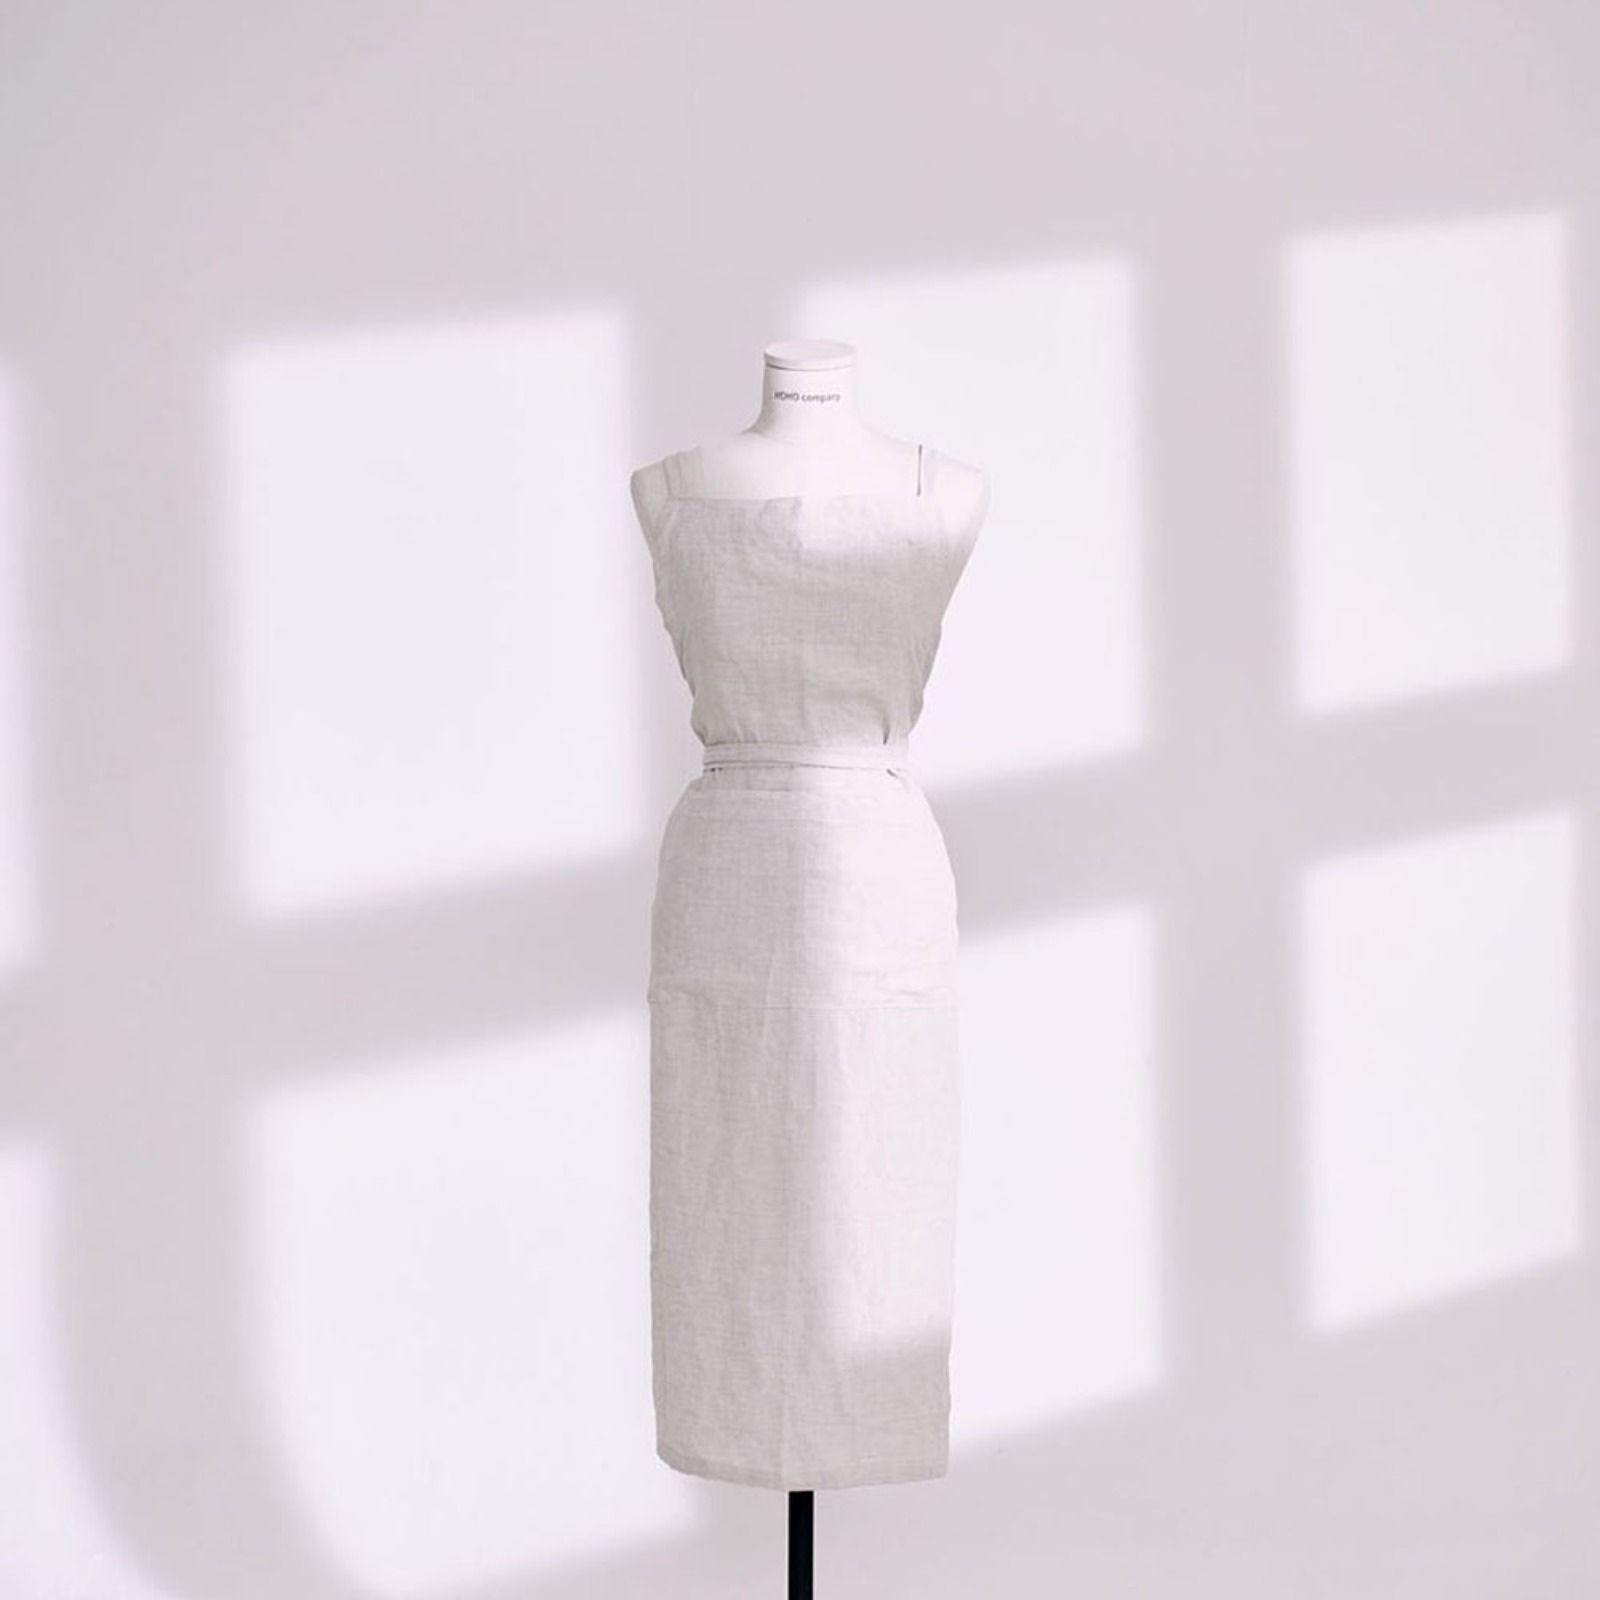 챕터원,[Spring fabric collection, 10%] 프리미엄 린넨 에이프런_오트밀